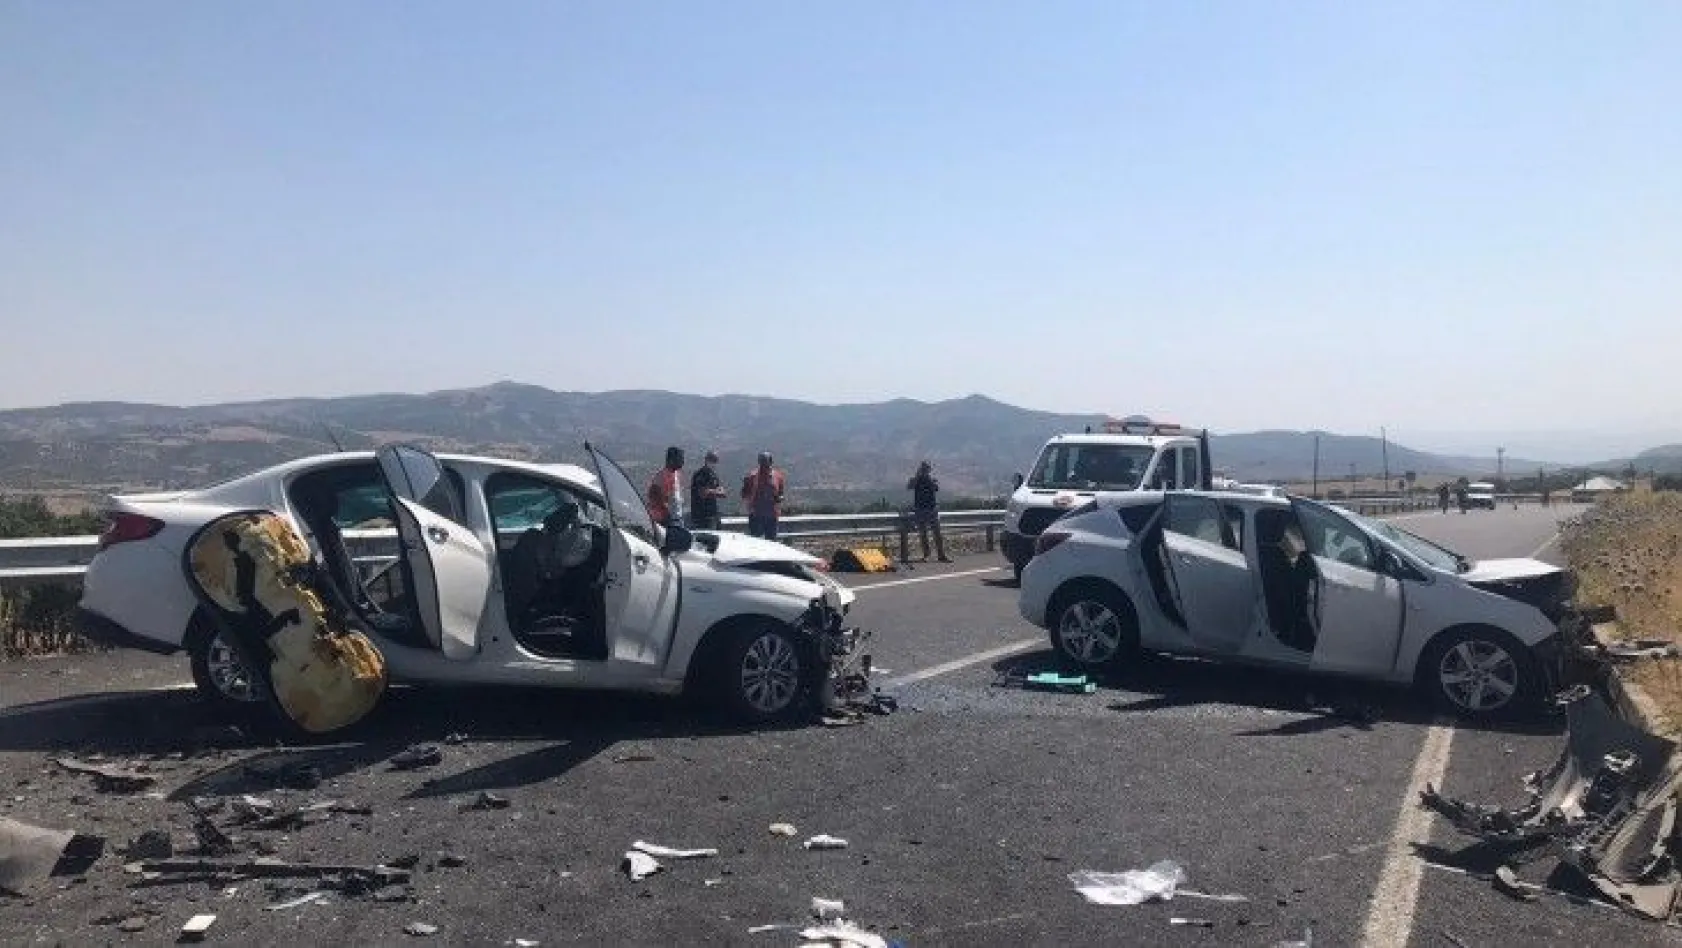 Bingöl'deki kazada 2 kişi hayatını kaybetti